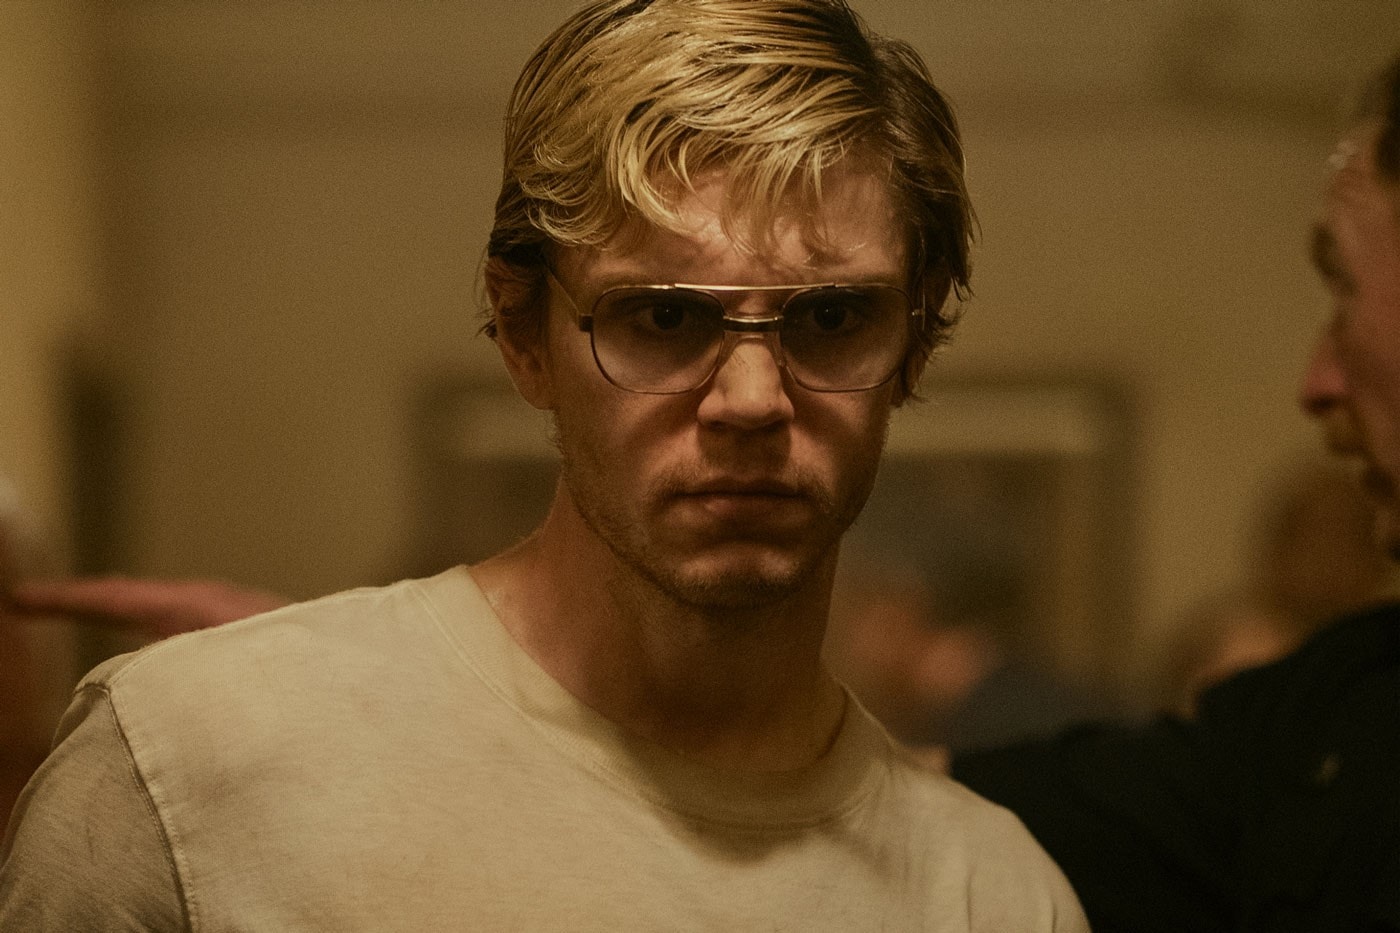 Netflix 杀人犯影集《食人魔达默》真实人物配戴眼镜以 $15 万美元出售